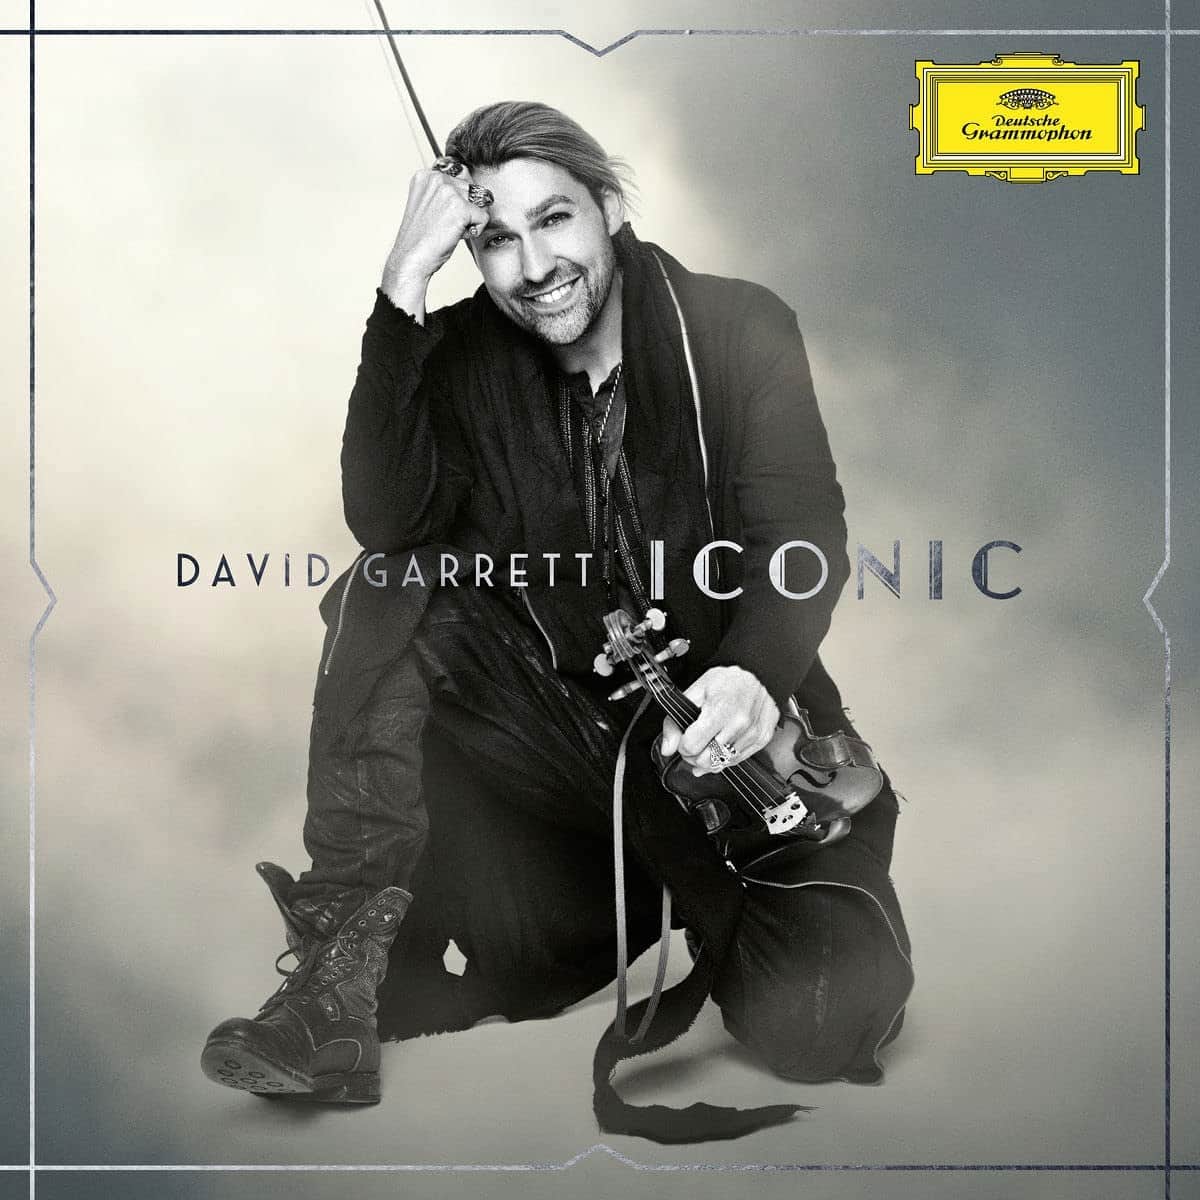 Klassik-CD von David Garrett “ICONIC” 2022